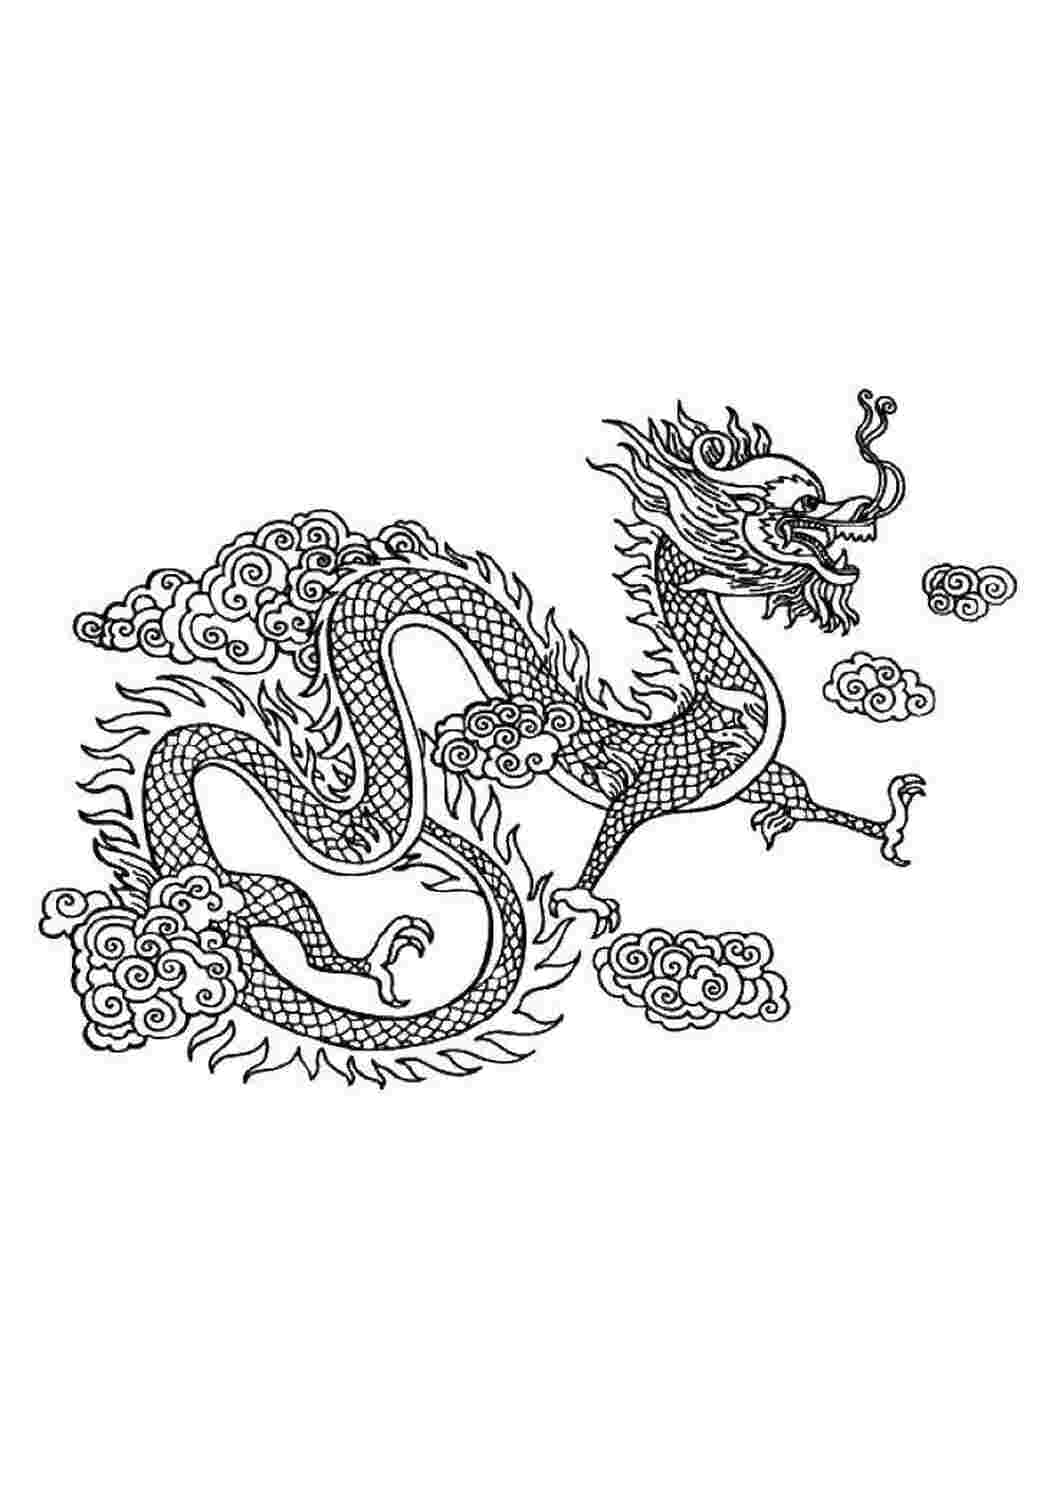 Китайский дракон раскраска сложная